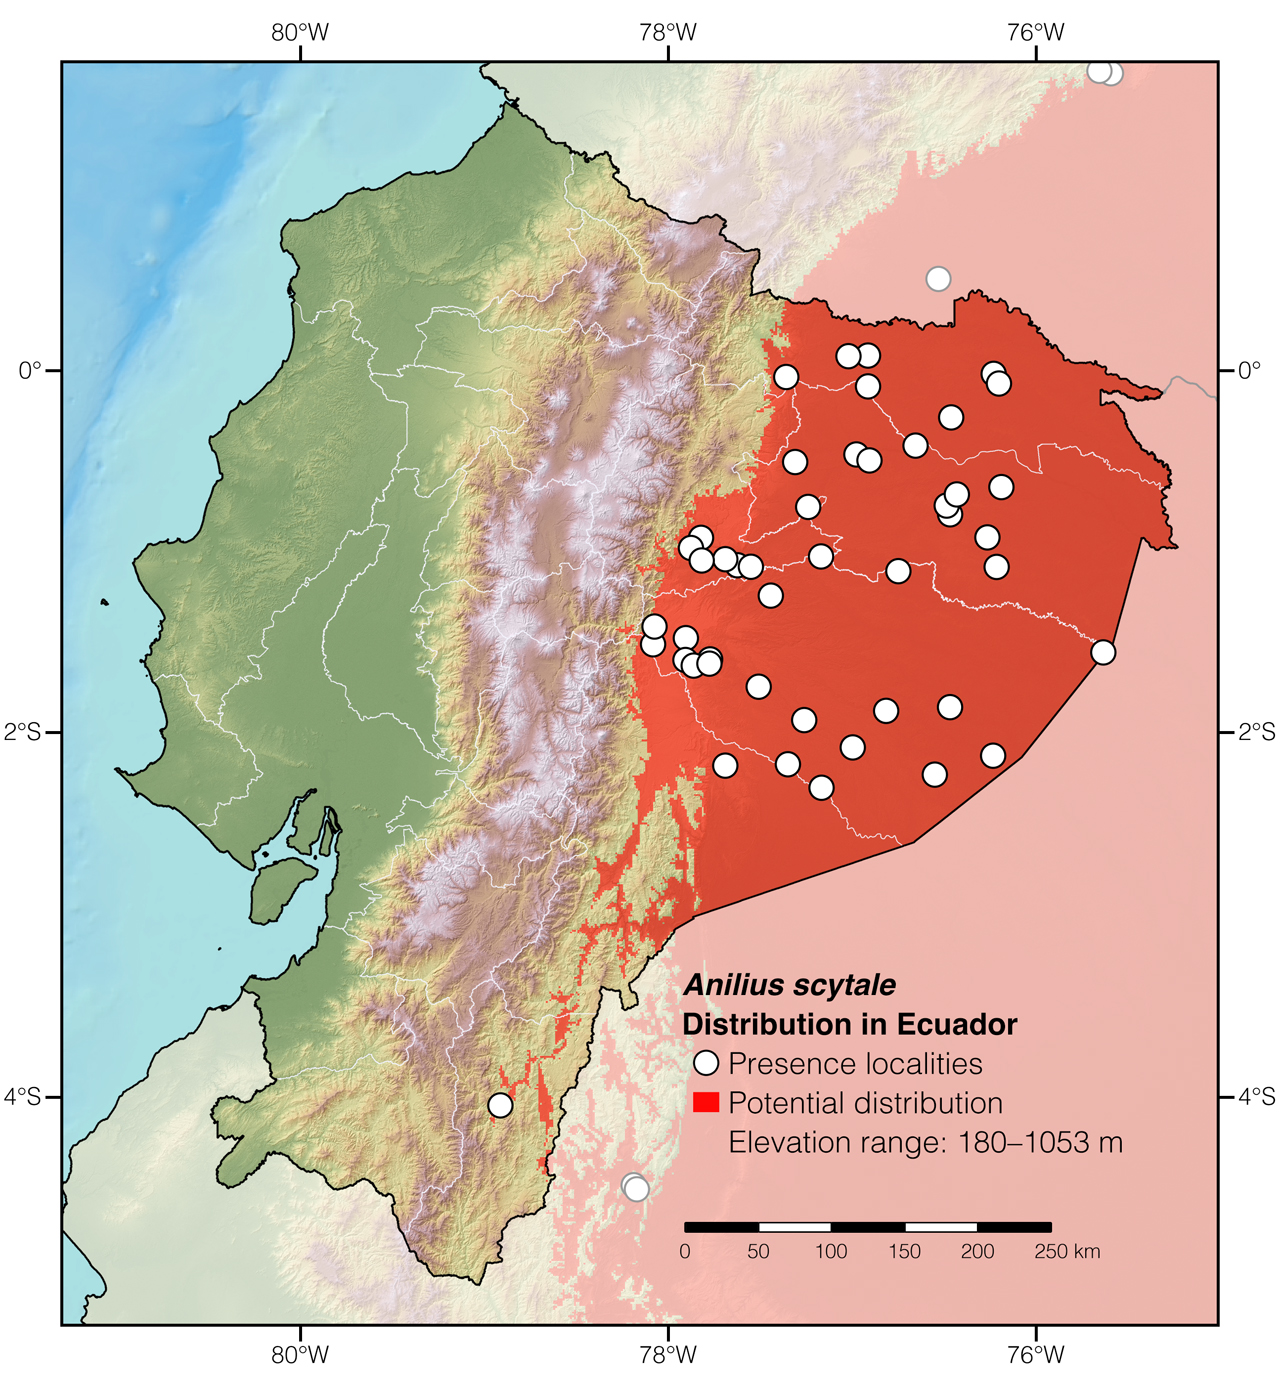 Distribution of Anilius scytale in Ecuador